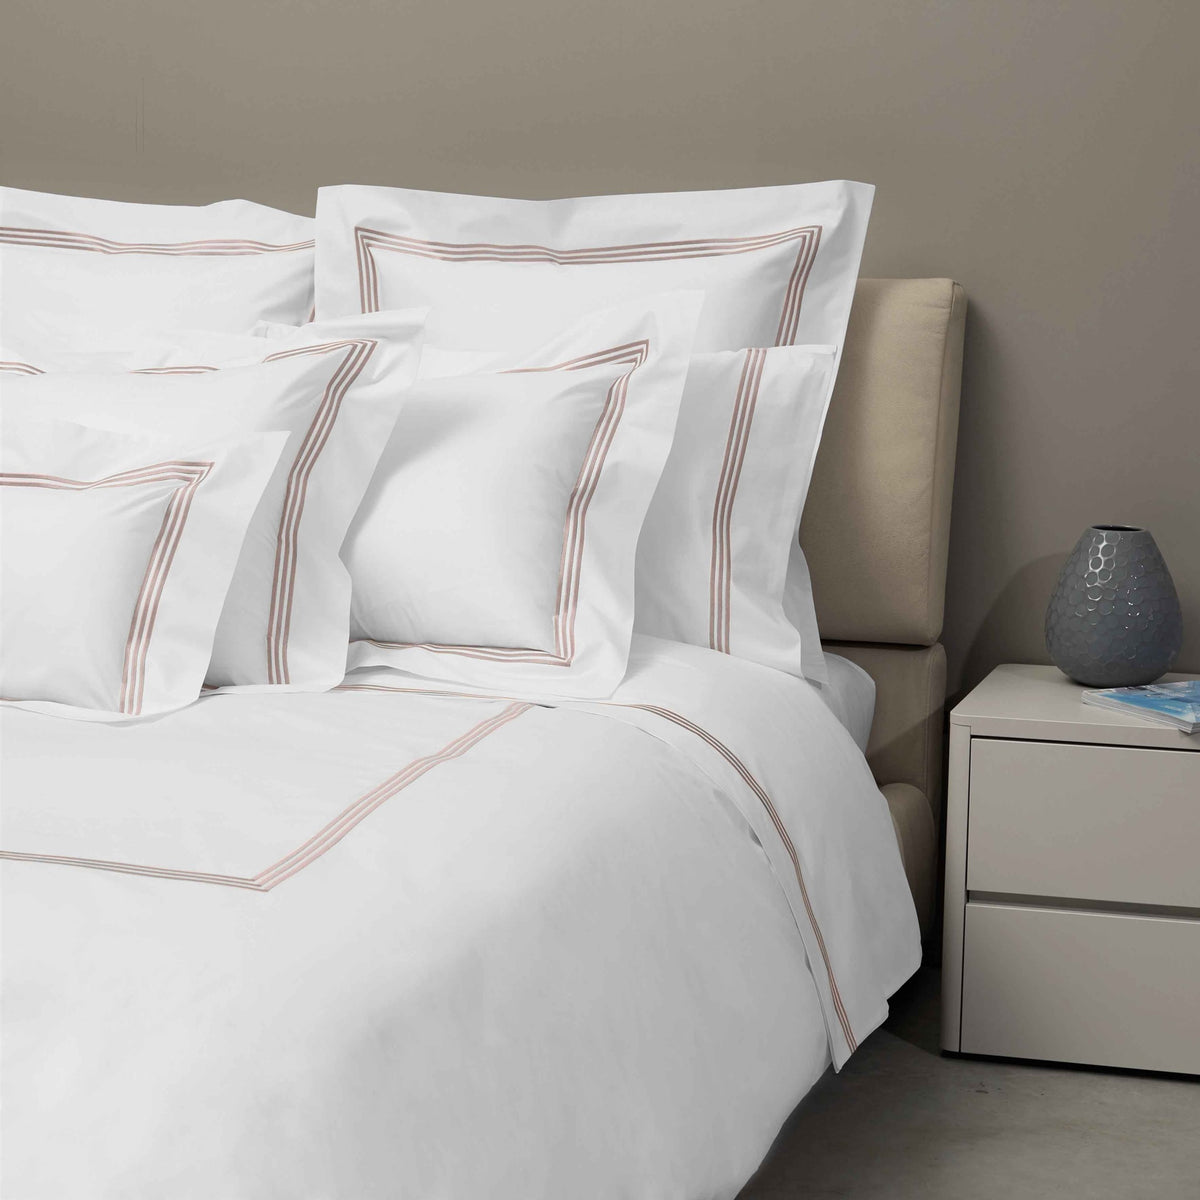 Bed Dressed in Signoria Platinum Percale Bedding in White/Antique Rose Color